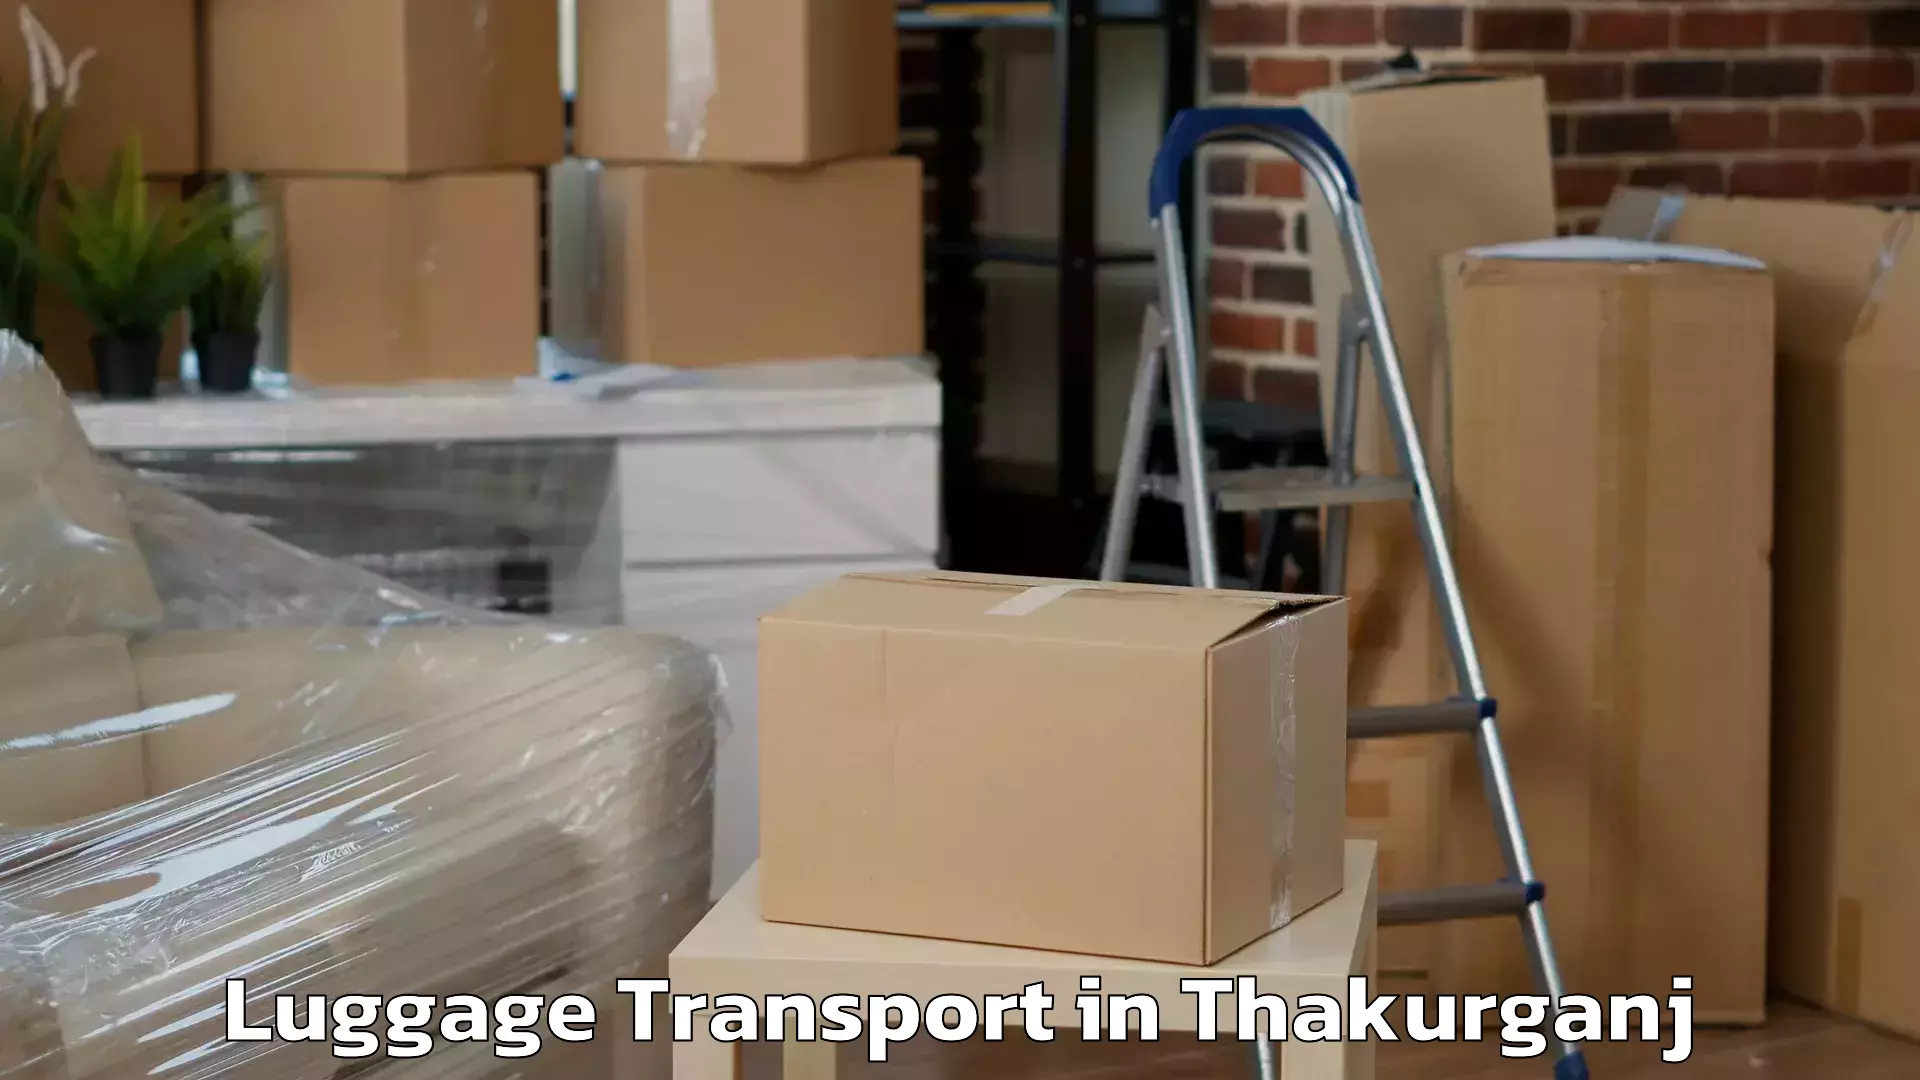 Luggage transport schedule in Thakurganj